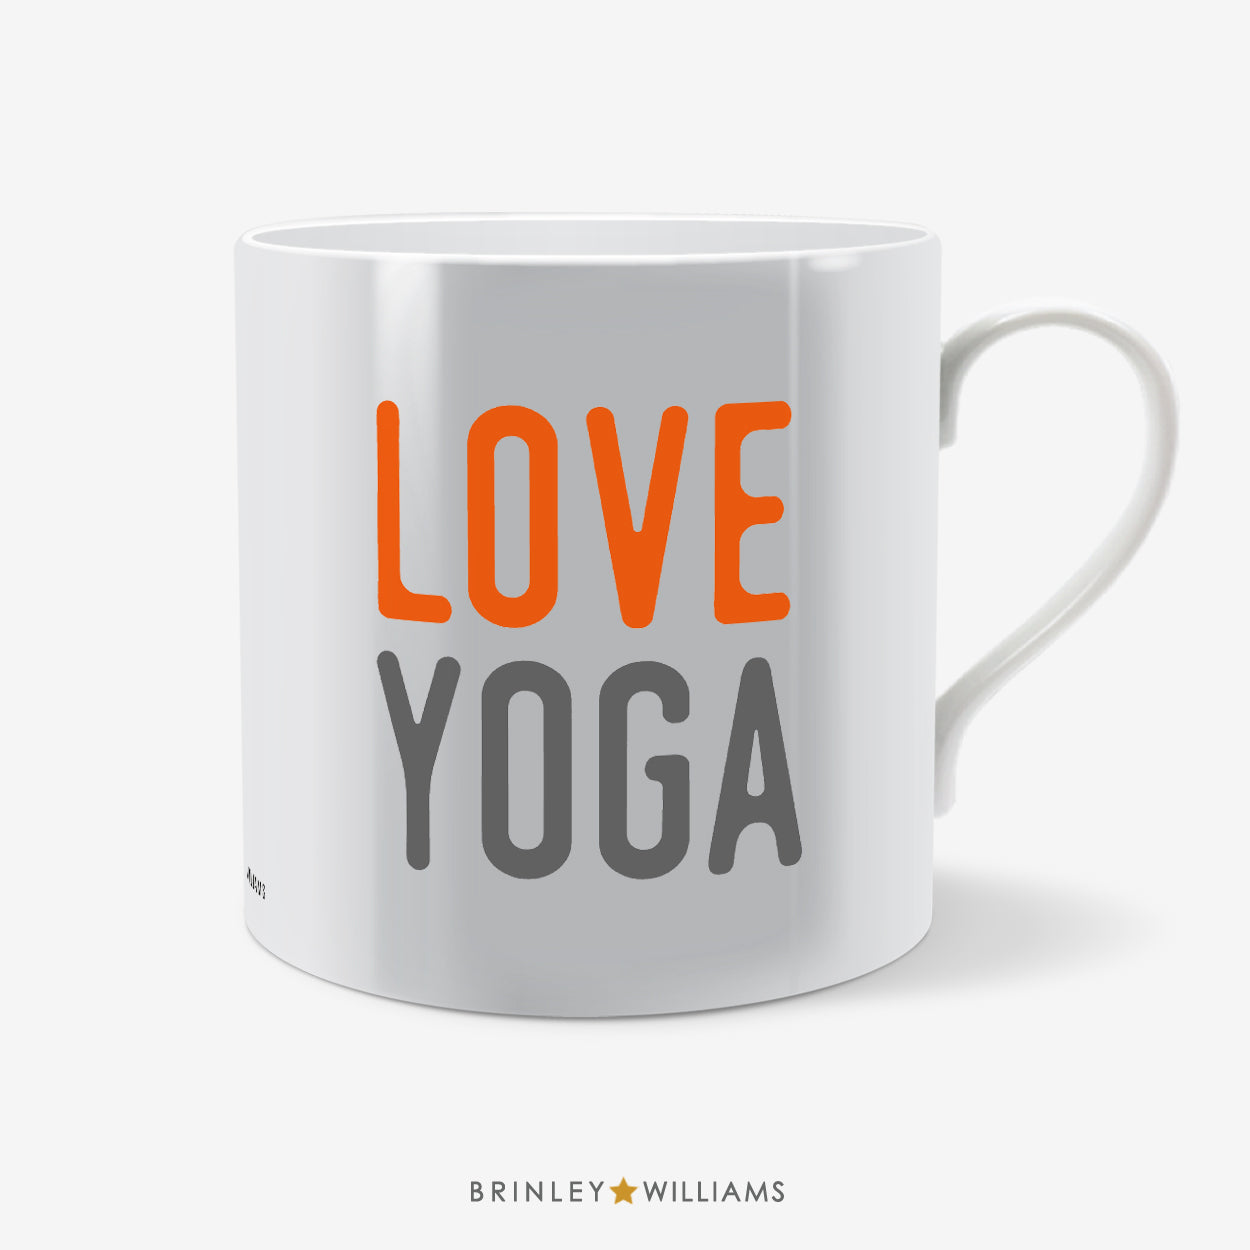 Love Yoga Mug - Orange